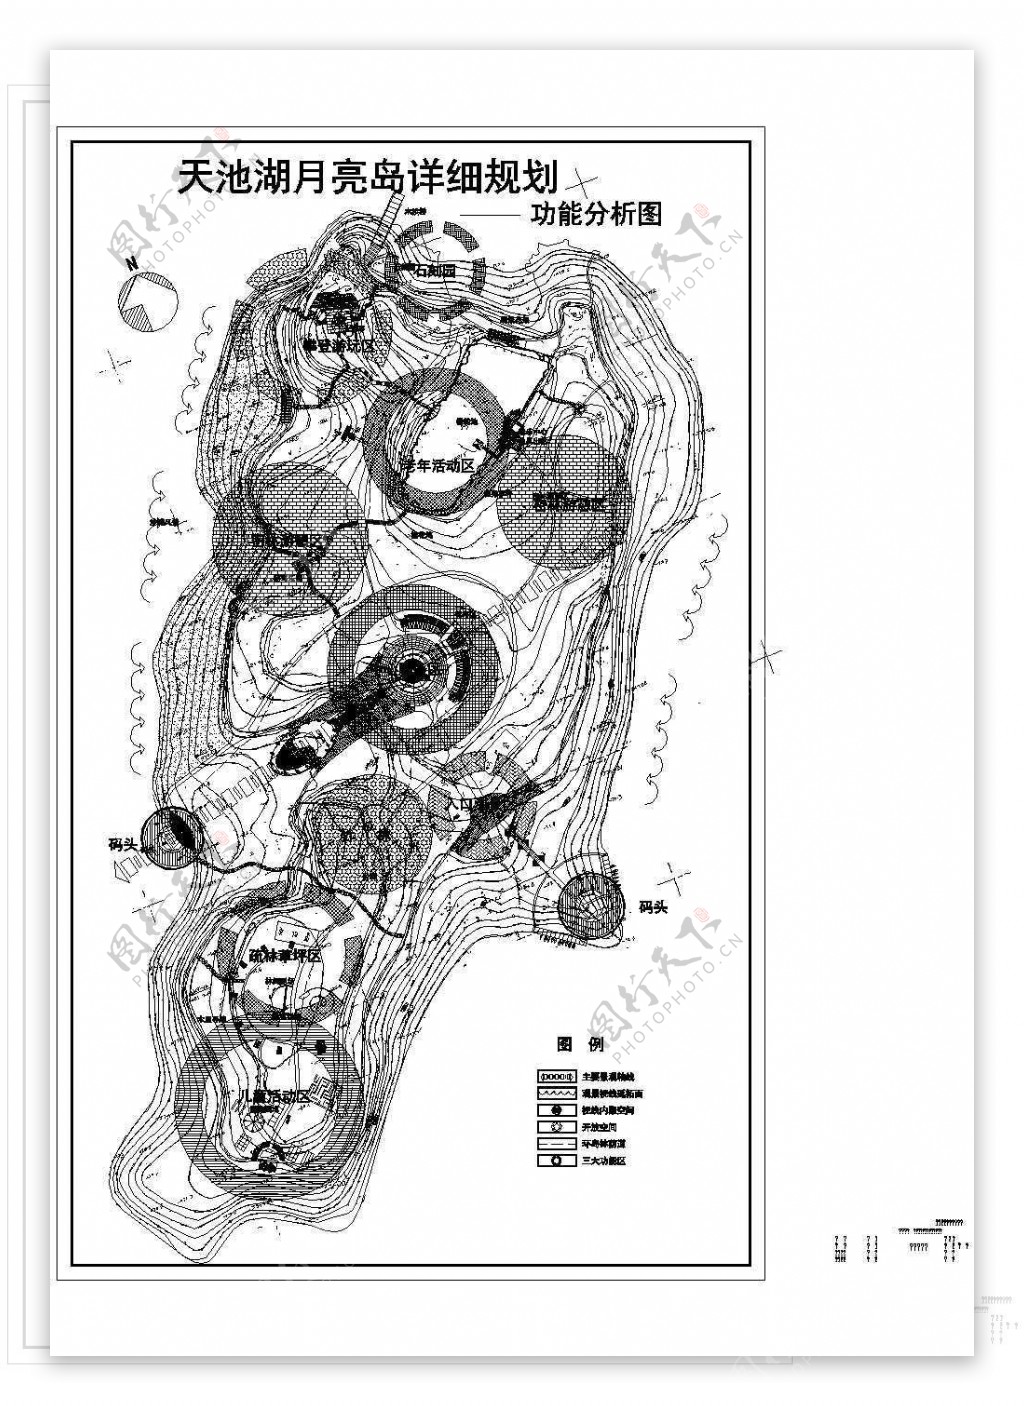 天池湖月亮岛公园功能分析图CAD图纸